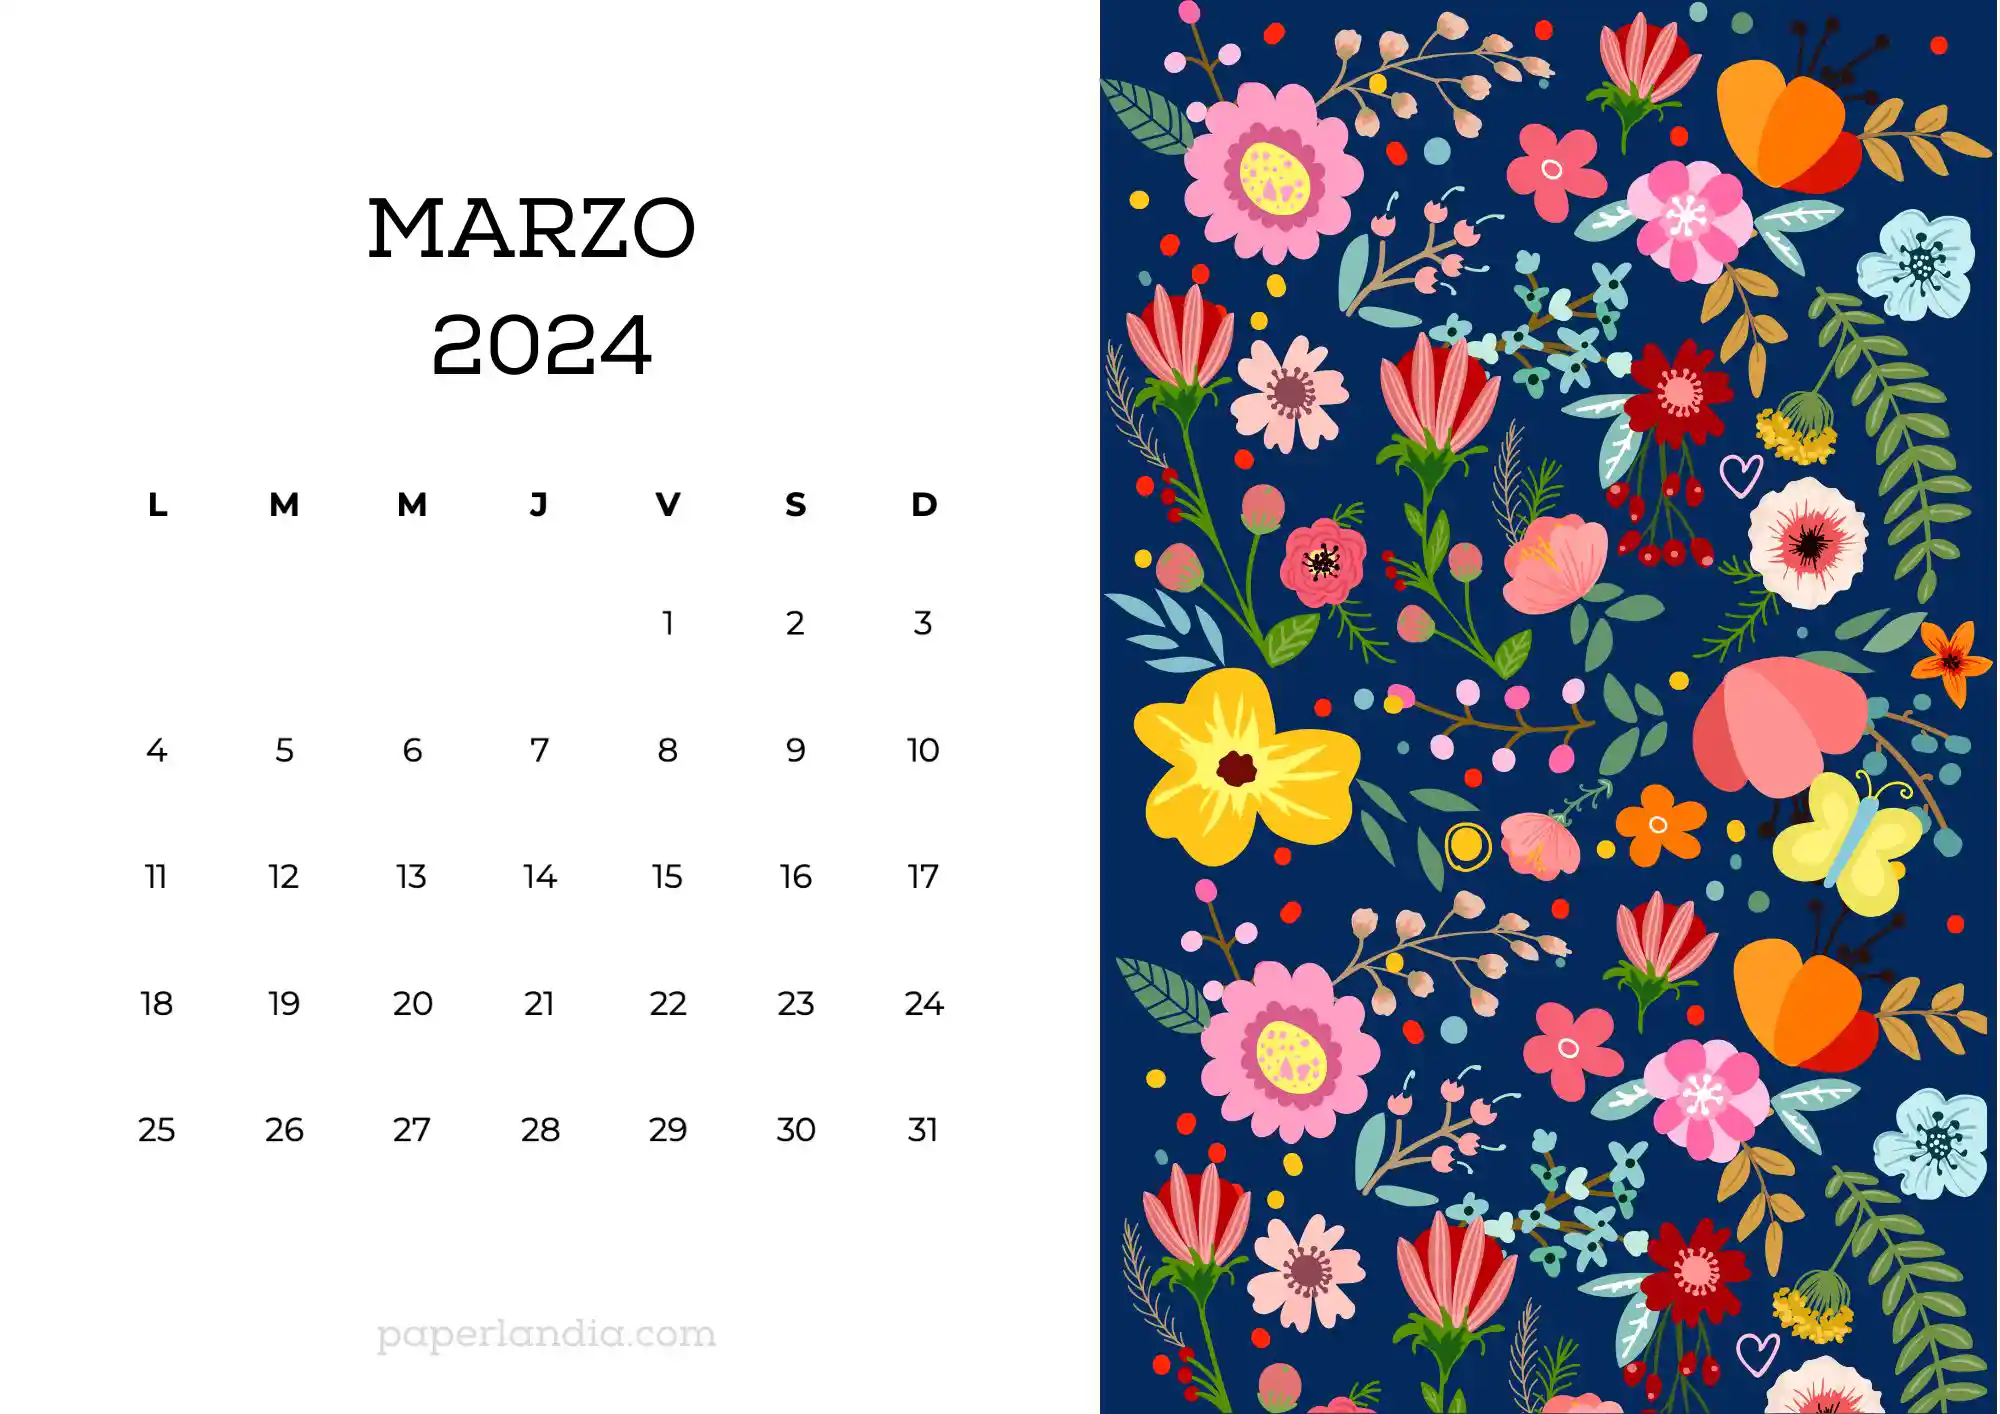 Calendario marzo 2024 horizontal con flores escandinavas fondo azul